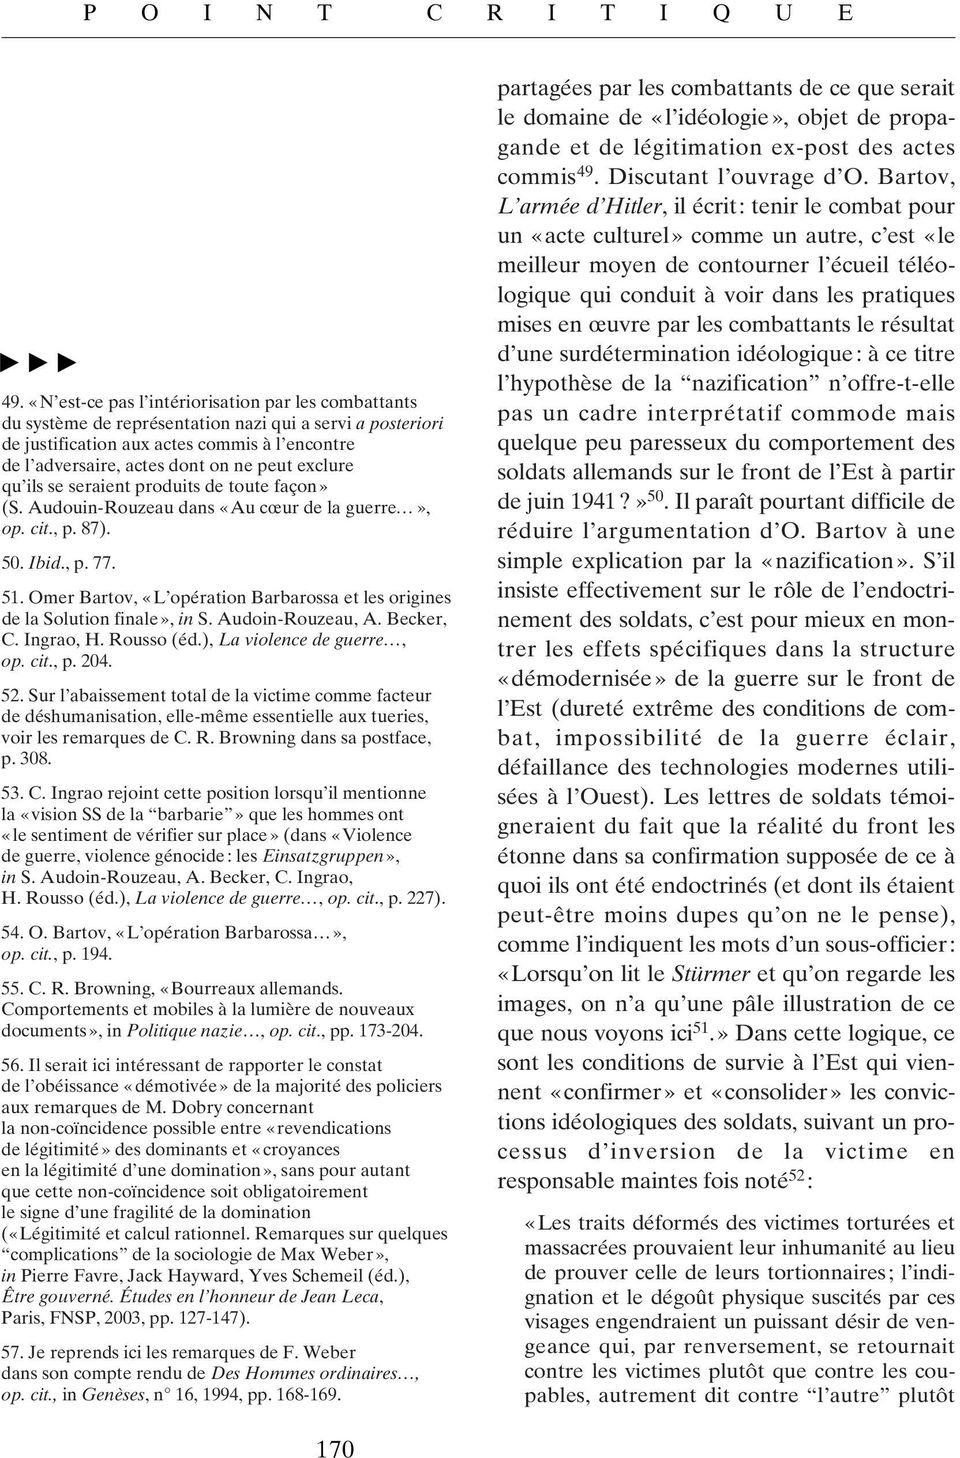 Omer Bartov, «L opération Barbarossa et les origines de la Solution finale», in S. Audoin-Rouzeau, A. Becker, C. Ingrao, H. Rousso (éd.), La violence de guerre, op. cit., p. 204. 52.